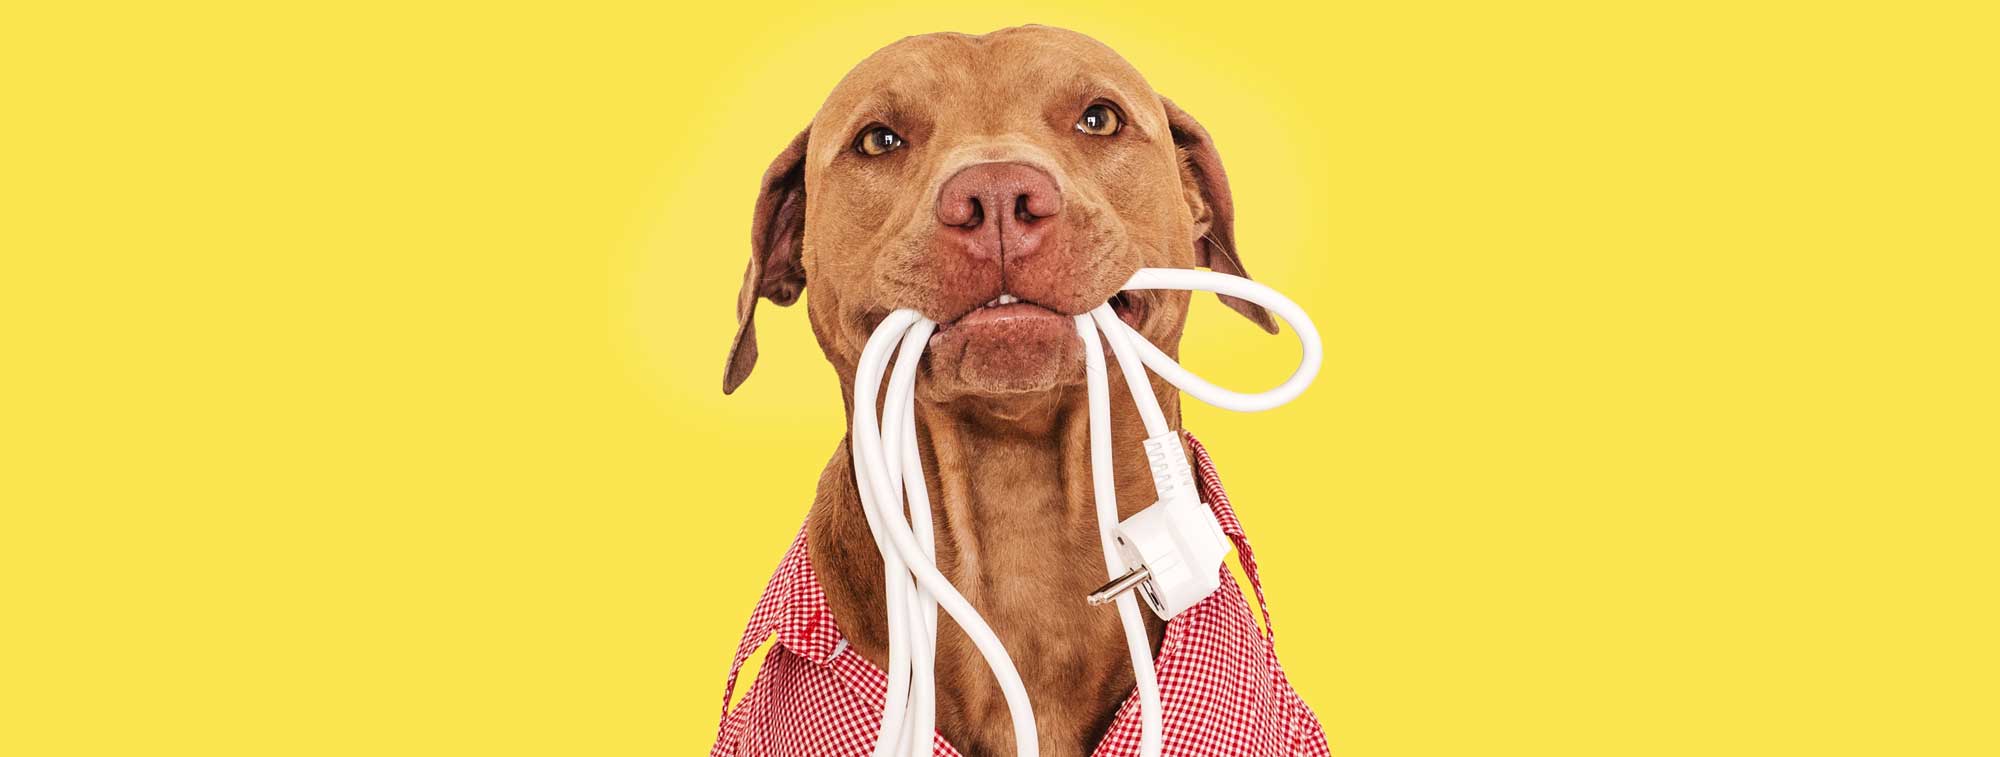 Ein süßer brauner Hund hat eine Mehrfachsteckdose im Maul und trägt ein rot-kariertes Hemd.